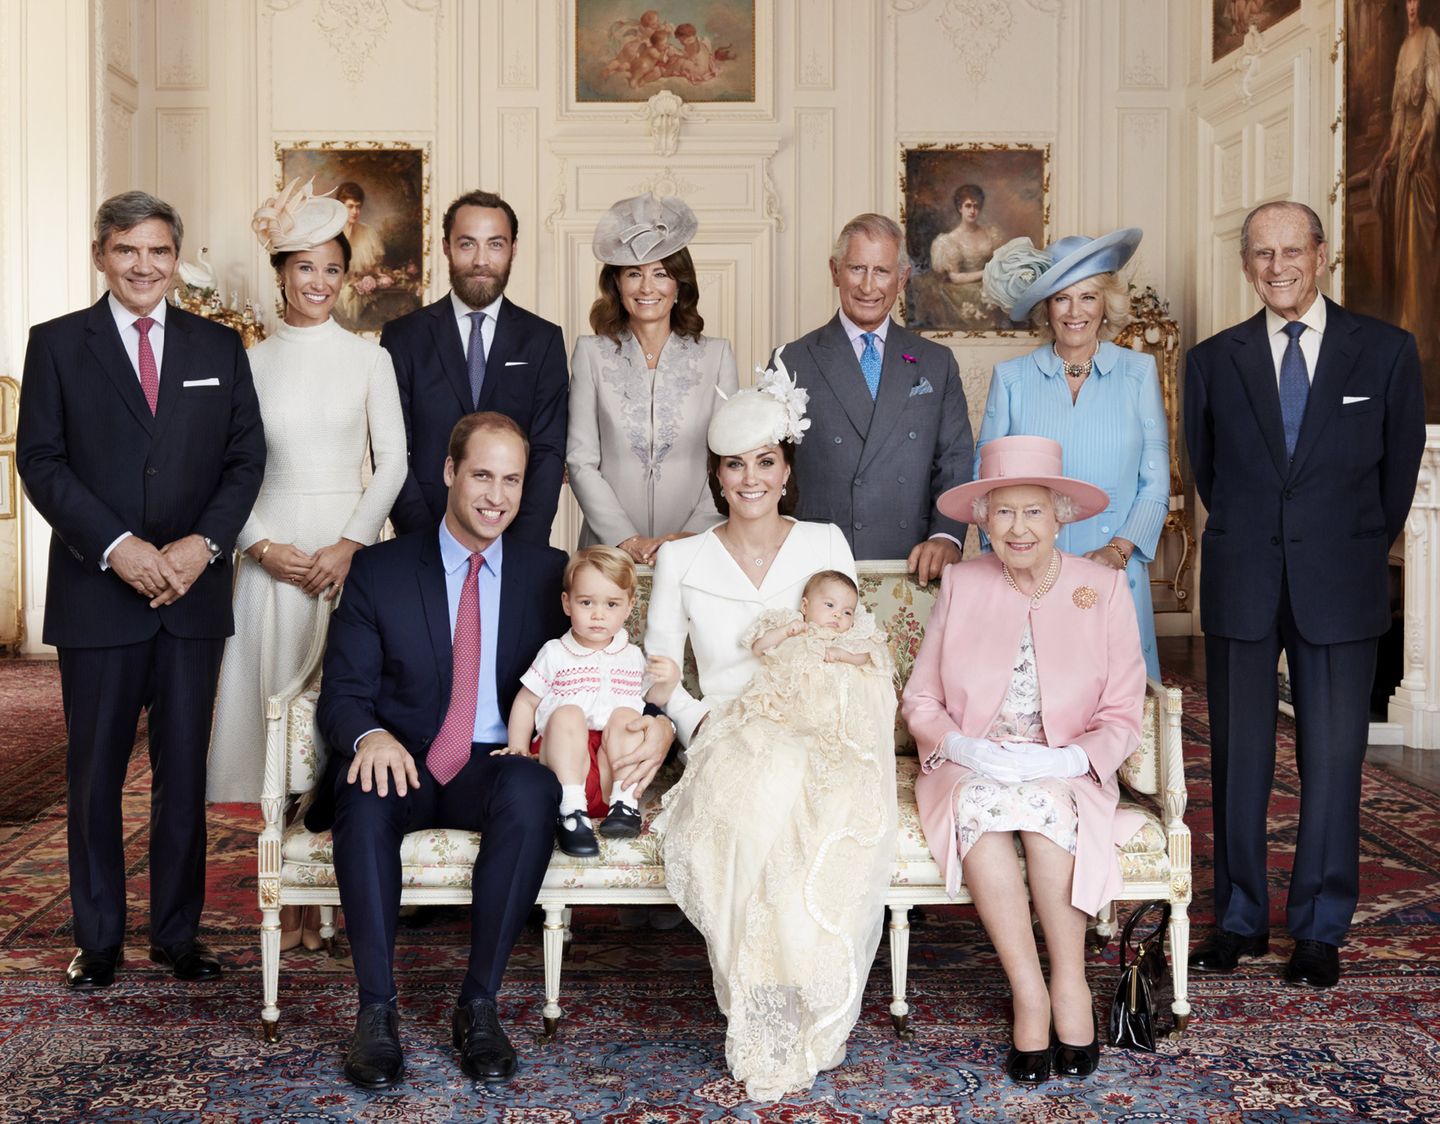 Queen Elizabeth sitzt neben Prinz William, Prinz George, Herzogin Catherine und Prinzessin Charlotte. Dahinter von links nach rechts Michael Middleton, Catherines Schwester Pippa Middleton, James Middleton, Carole Middleton, Prinz Charles, Herzogin Camilla und Prinz Philip.